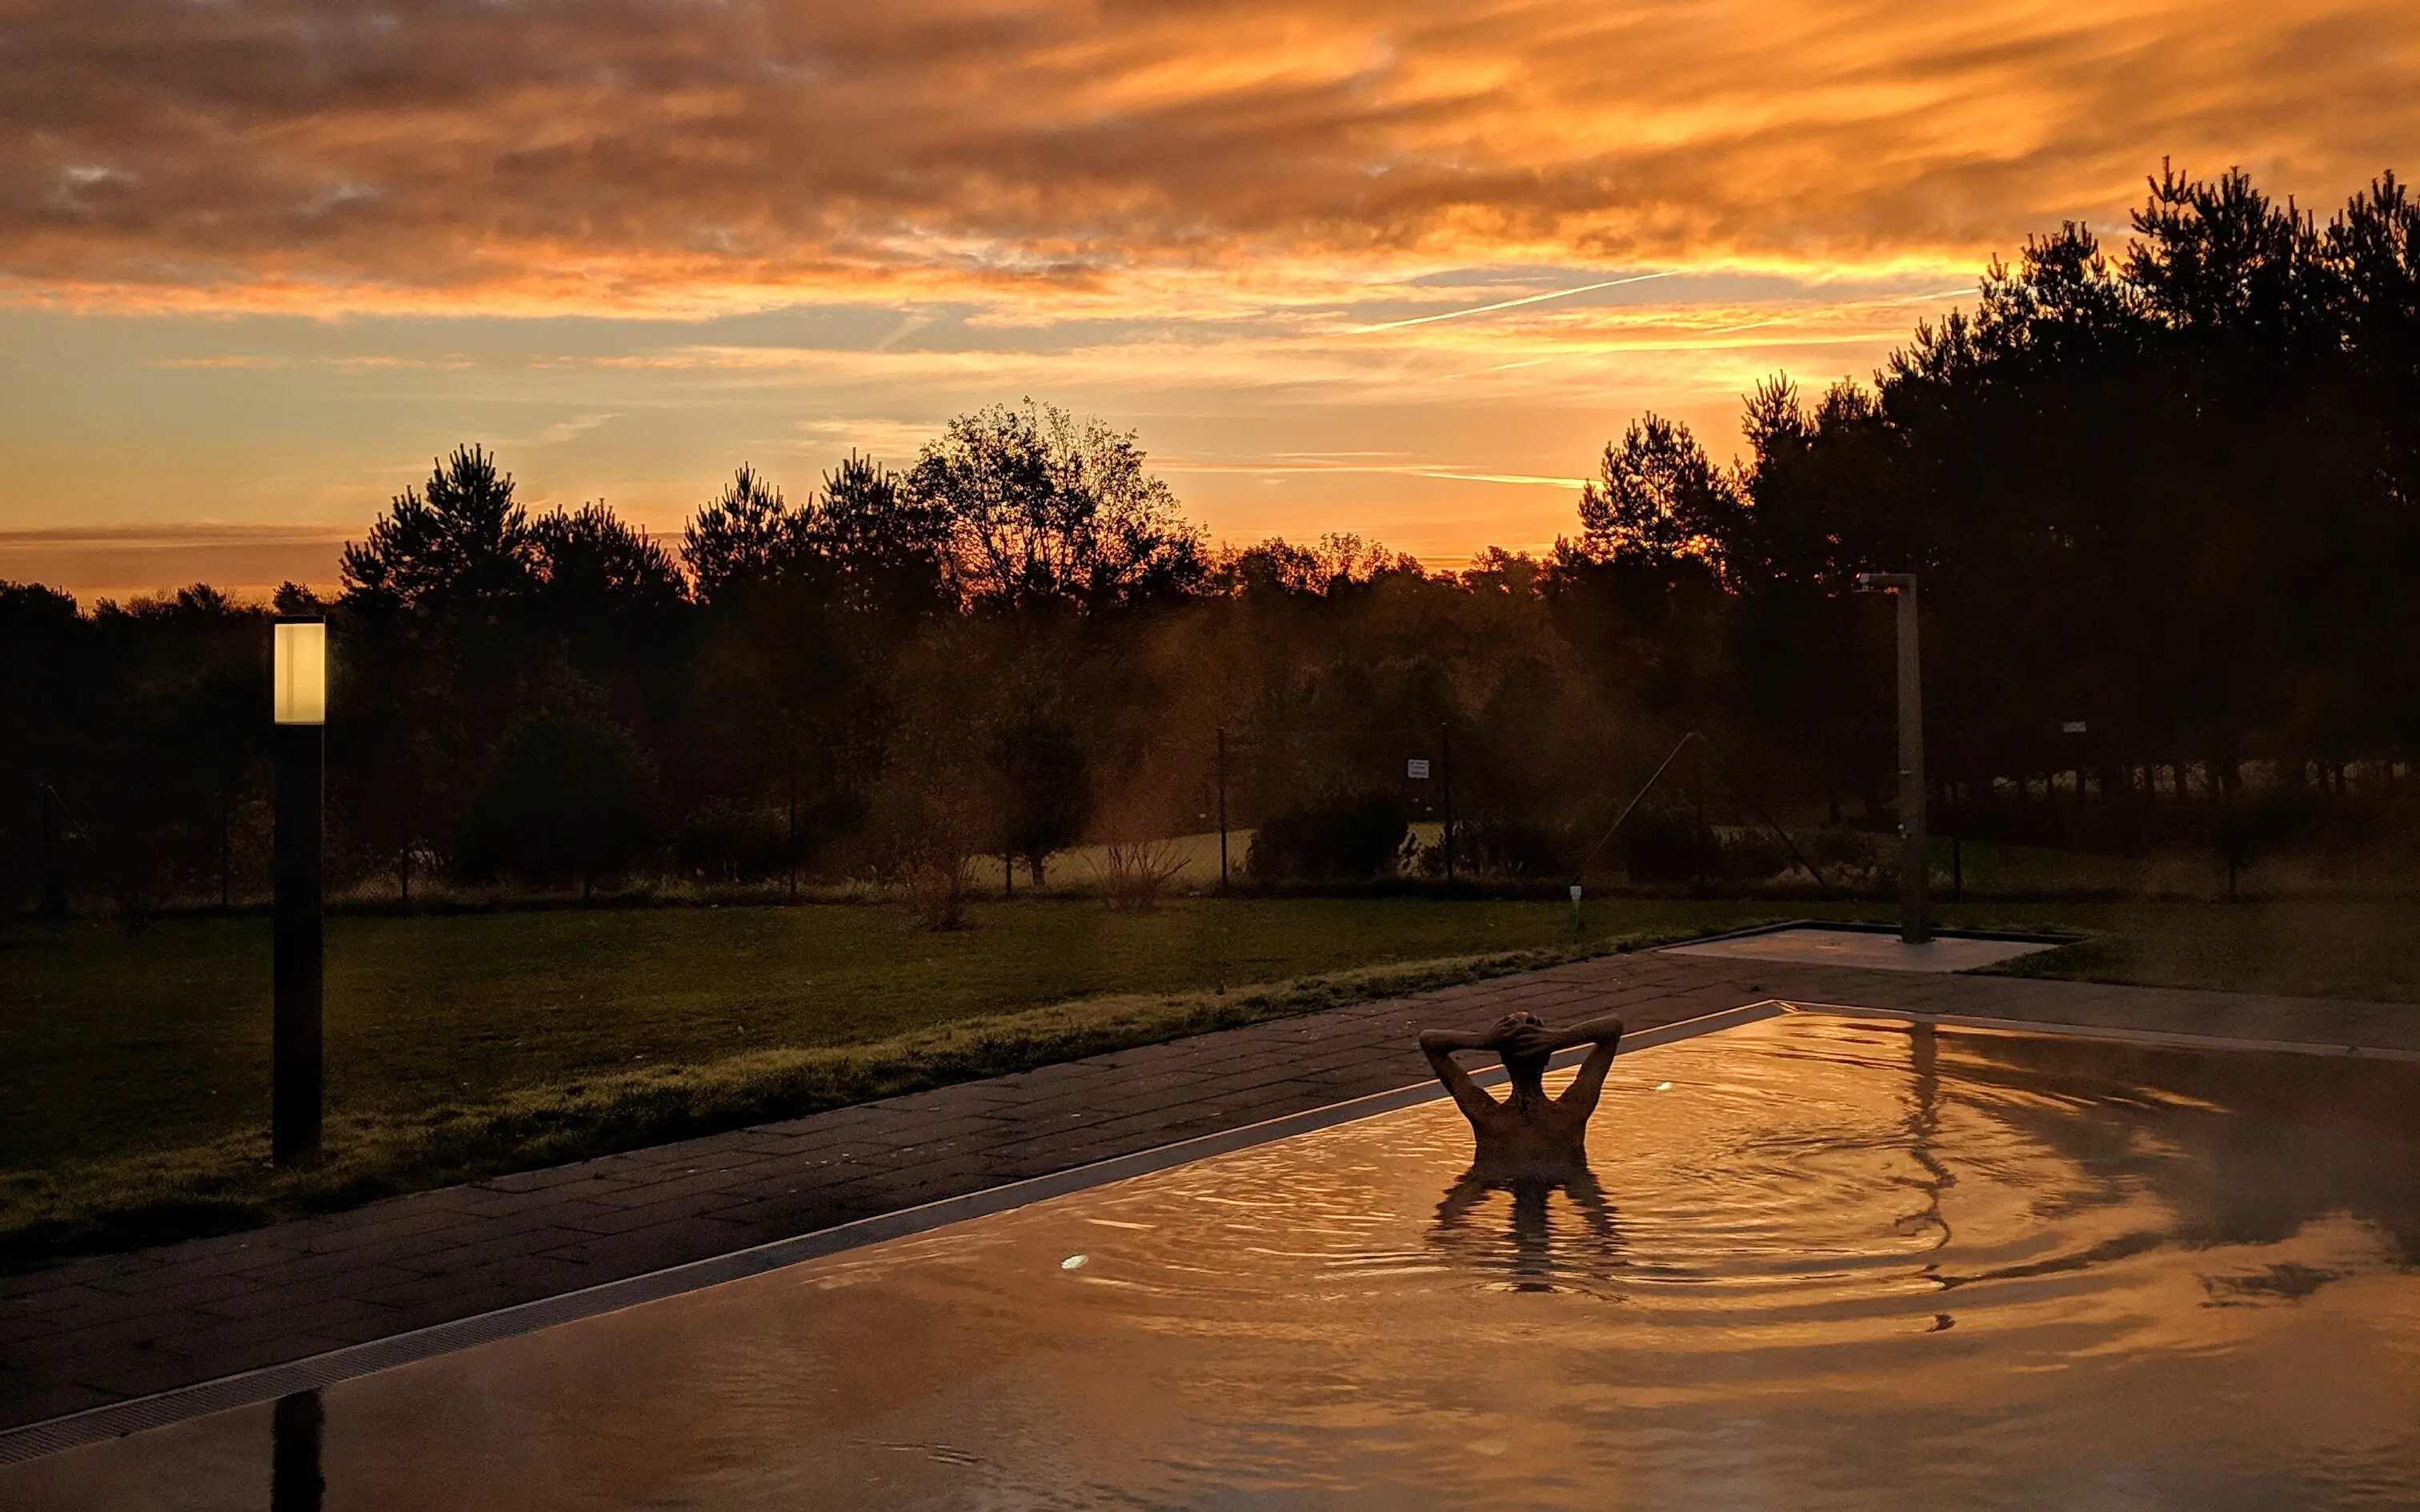 Der Außenpool des aja Bad Saarow in der Abenddämmerung. In der Mitte des Pools sind Umrisse einer Person zu erkennen, welche die Hände hinter dem Kopf verschränkt. Im Hintergrund sind die Schatten von Bäumen zu erkennen, die Wolken am Himmel sind orange-rot gefärbt und tauchen den Außenbereich in ein abendliches Licht.